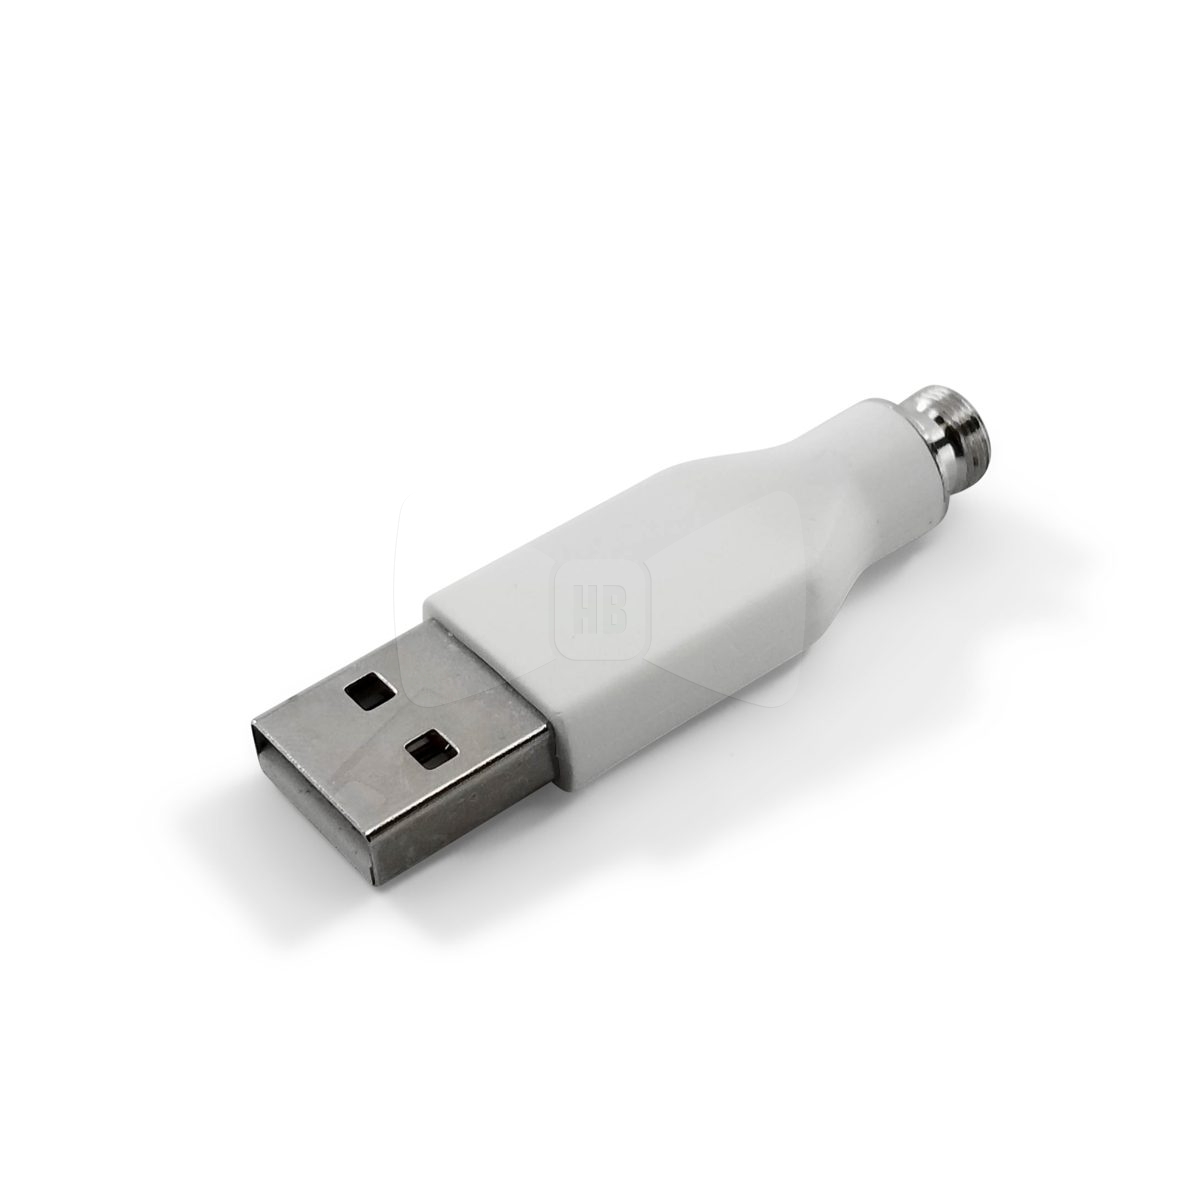 CCell USB Charger White 3V